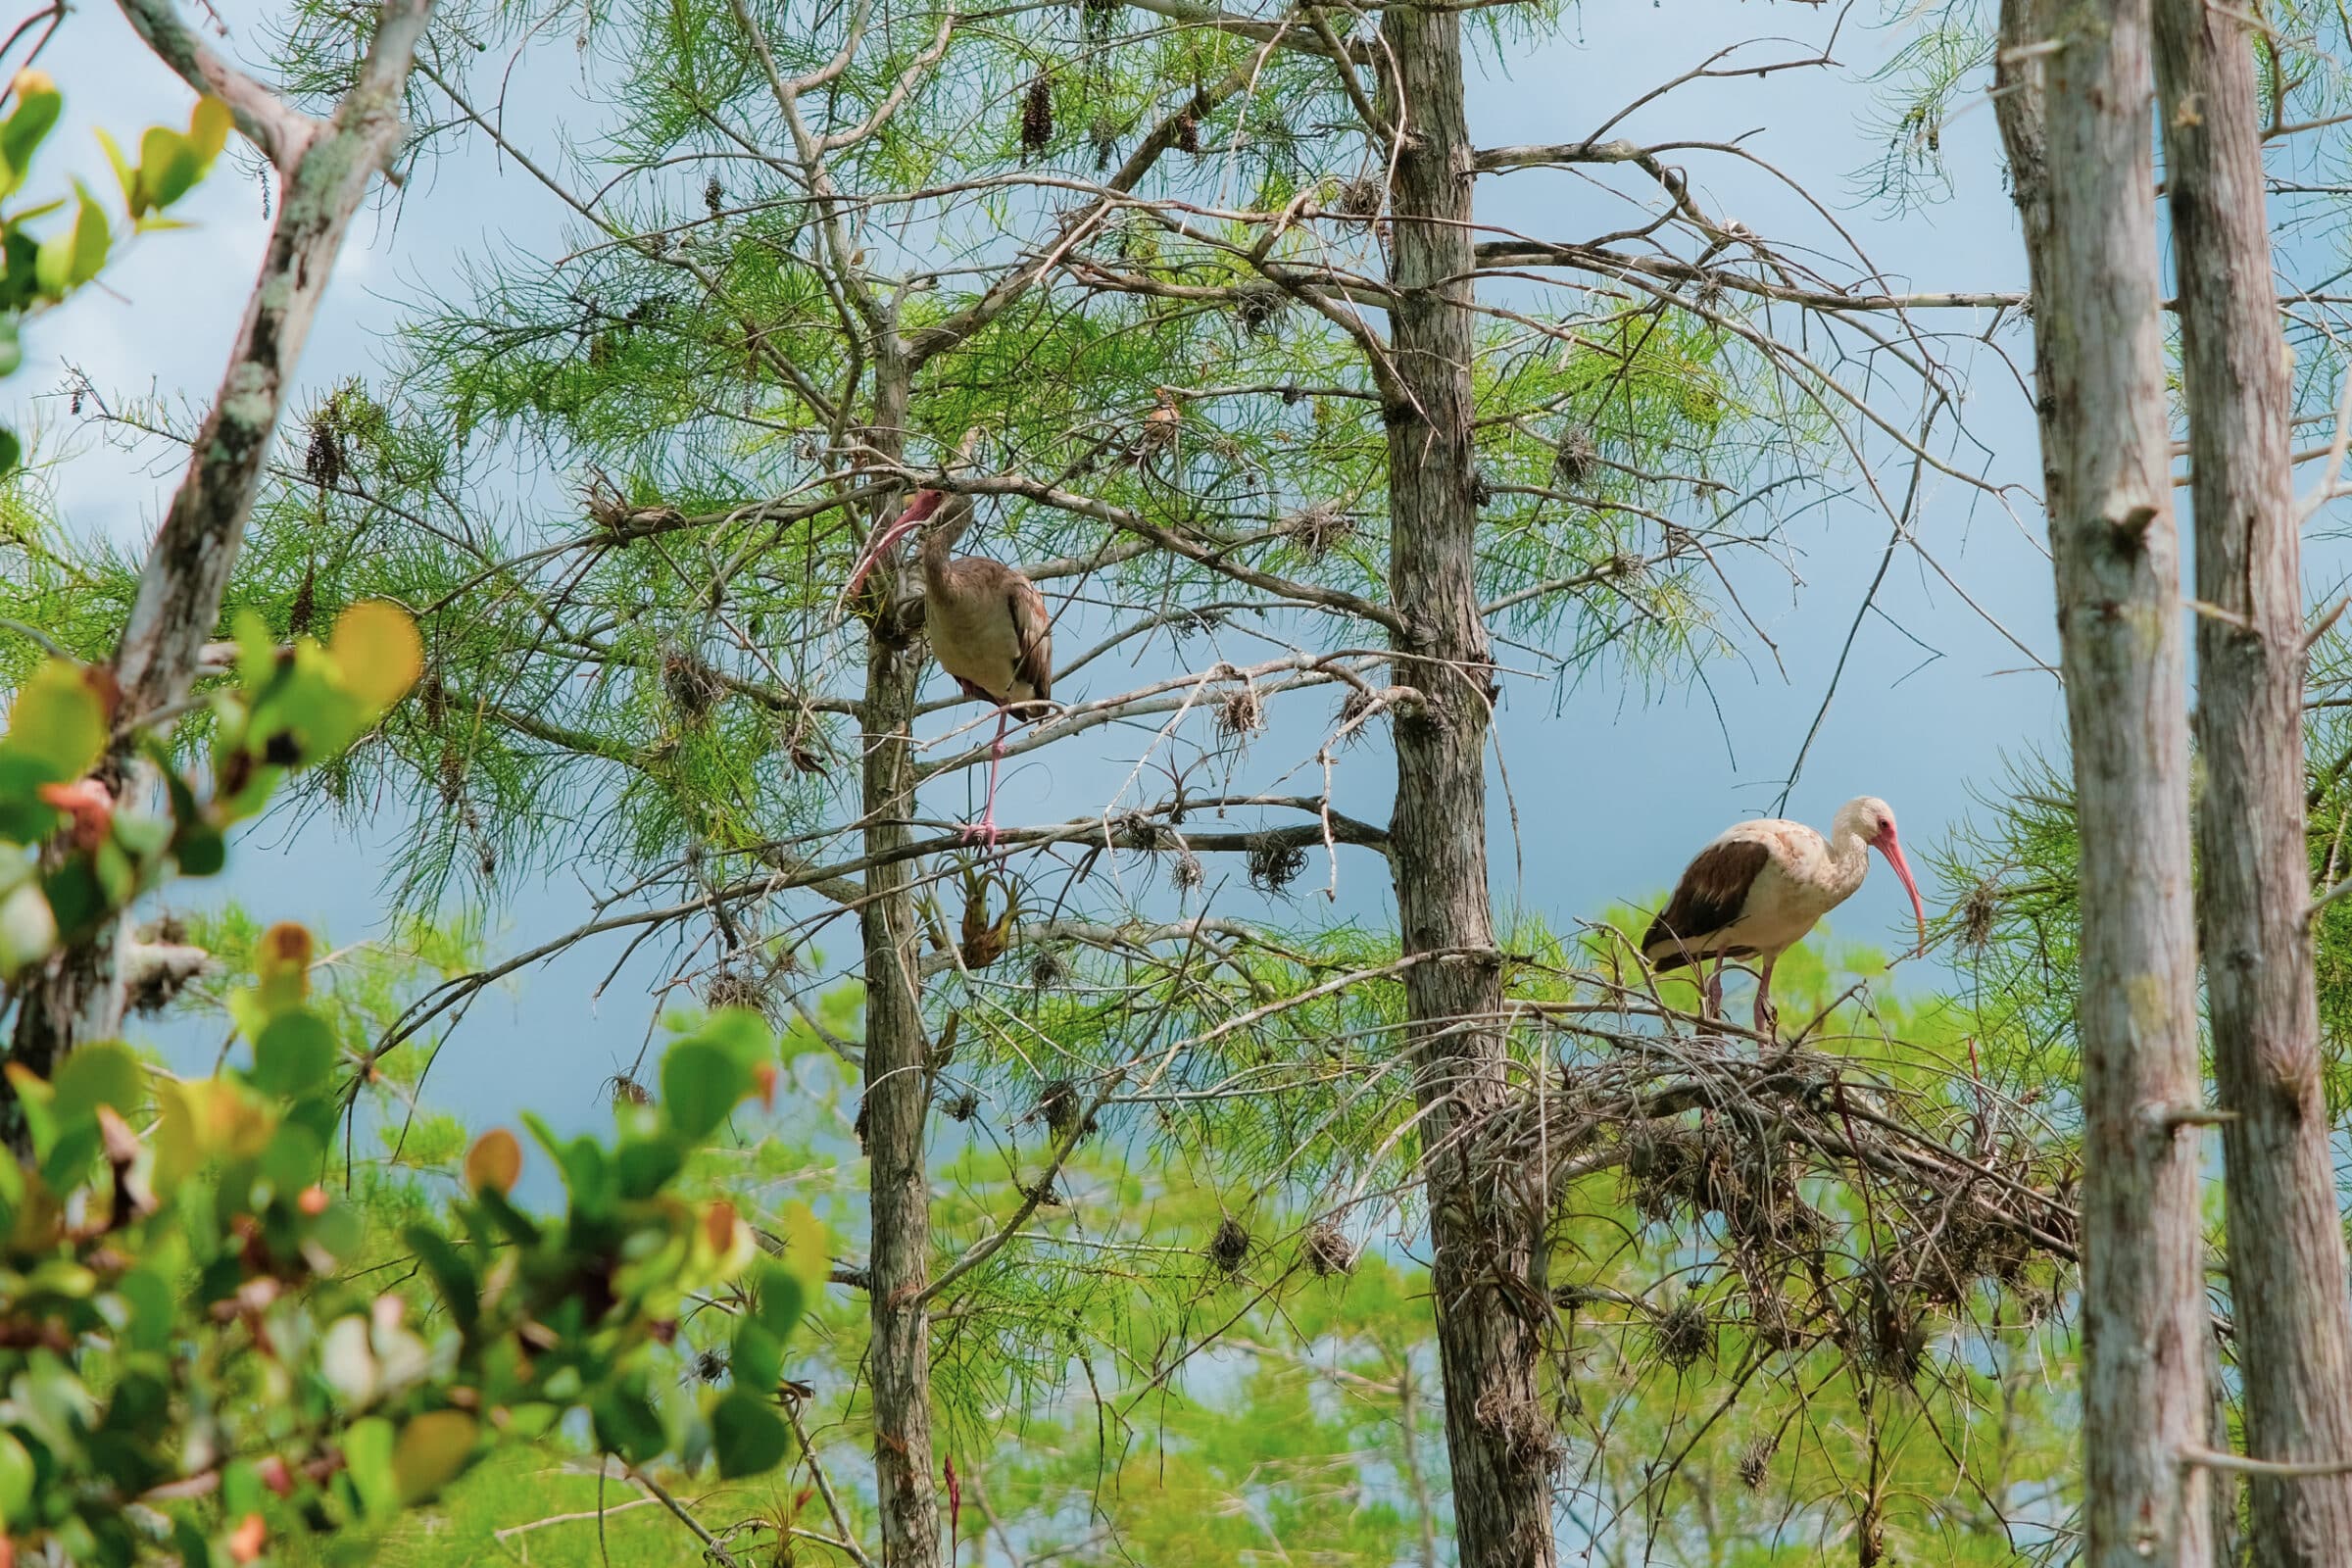 Everglades beschermt 16 unieke vogelsoorten die nergens anders ter wereld voorkomen